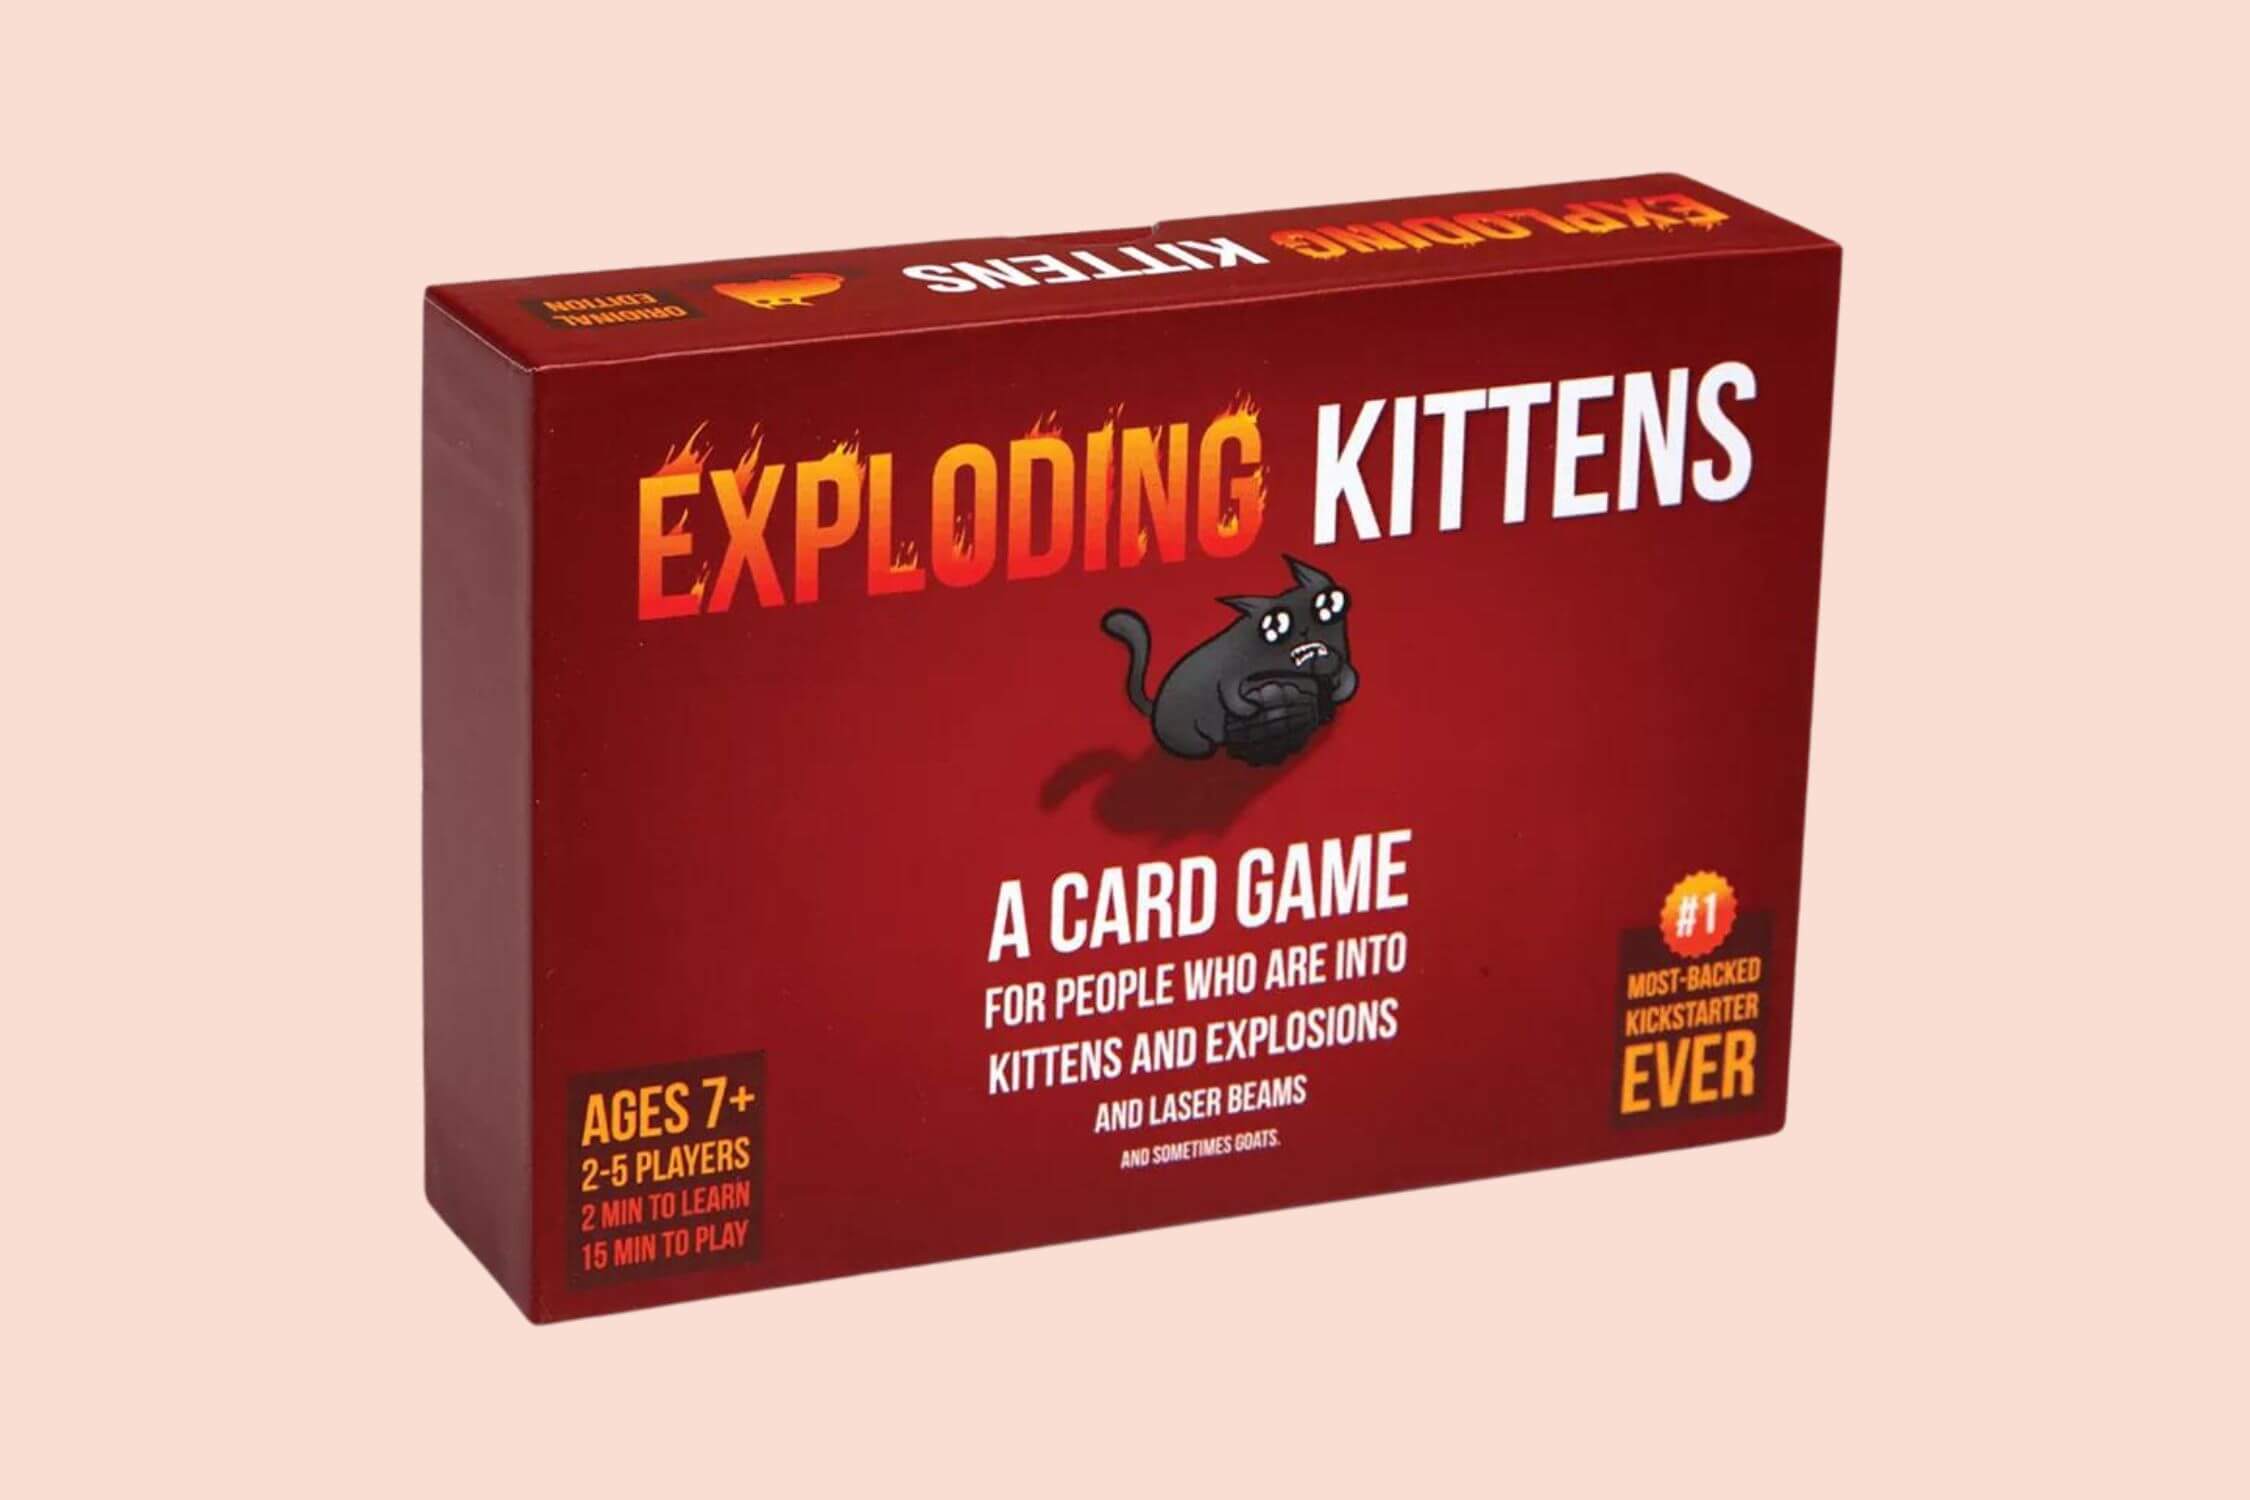 Exploding Kittens - Survival instincts game where kittens explode